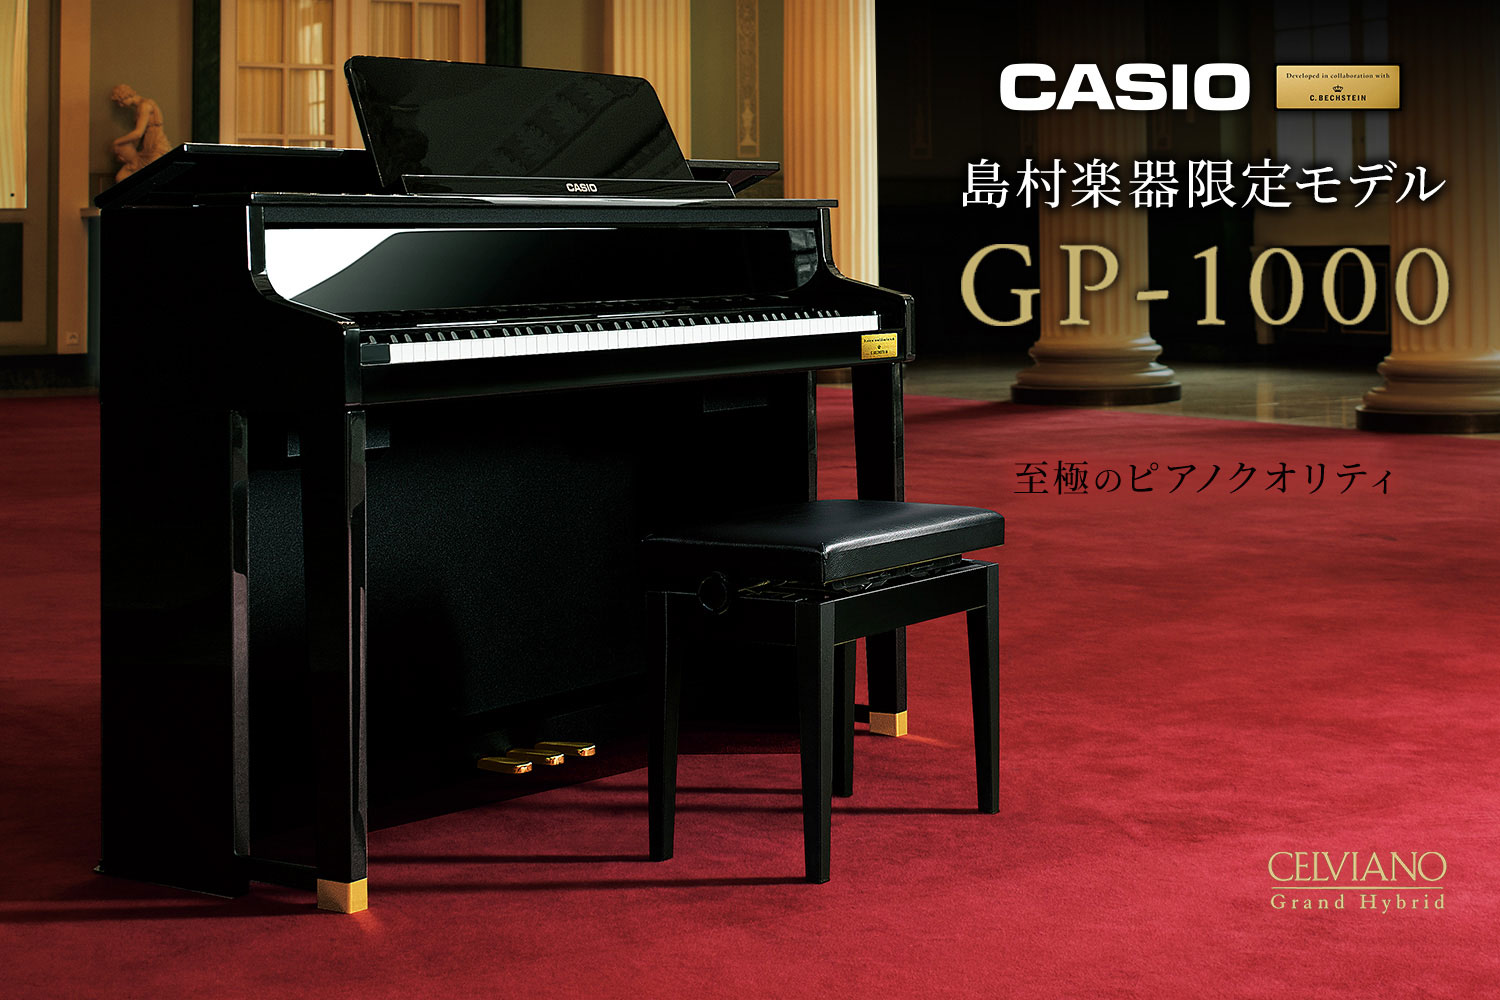 【新入荷しました】CASIO×C.ベヒシュタイン コラボレーション電子ピアノに島村楽器限定モデル「GP-1000」